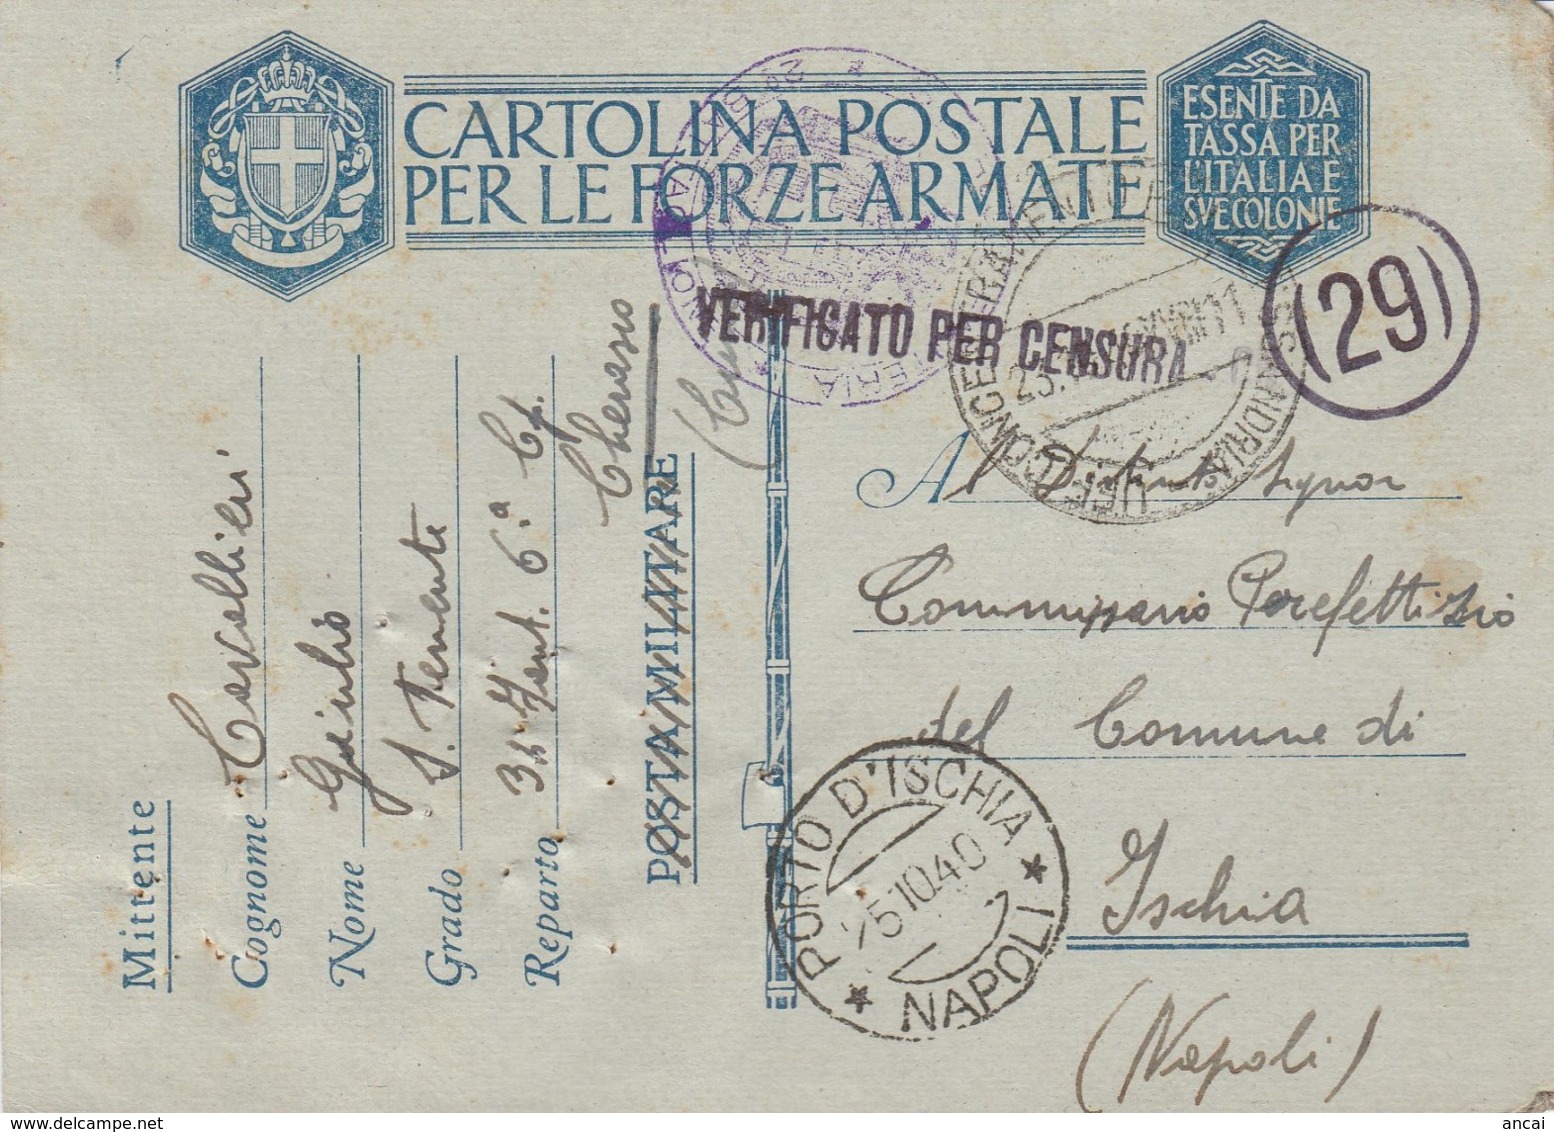 1940. Posta Militare Da Cerasco Ad Ischia. 34 ° FANTERIA. VERIFICATO PER CENSURA - Documenti